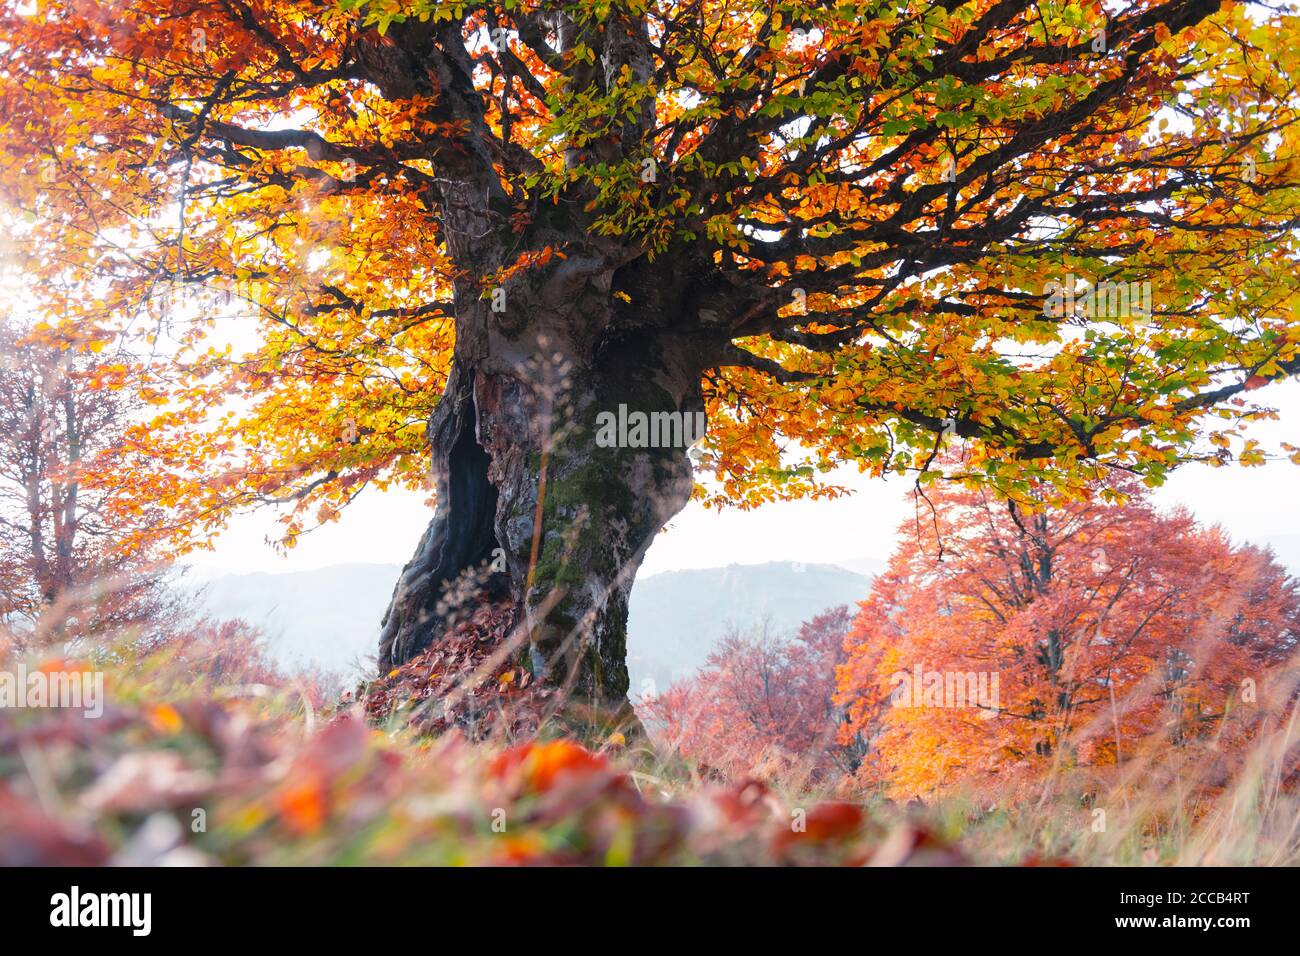 Maestoso vecchio albero di faggio con folliage giallo e arancio nella foresta d'autunno. Pittoresca scena autunnale in Carpazi, Ucraina. Fotografia di paesaggio Foto Stock